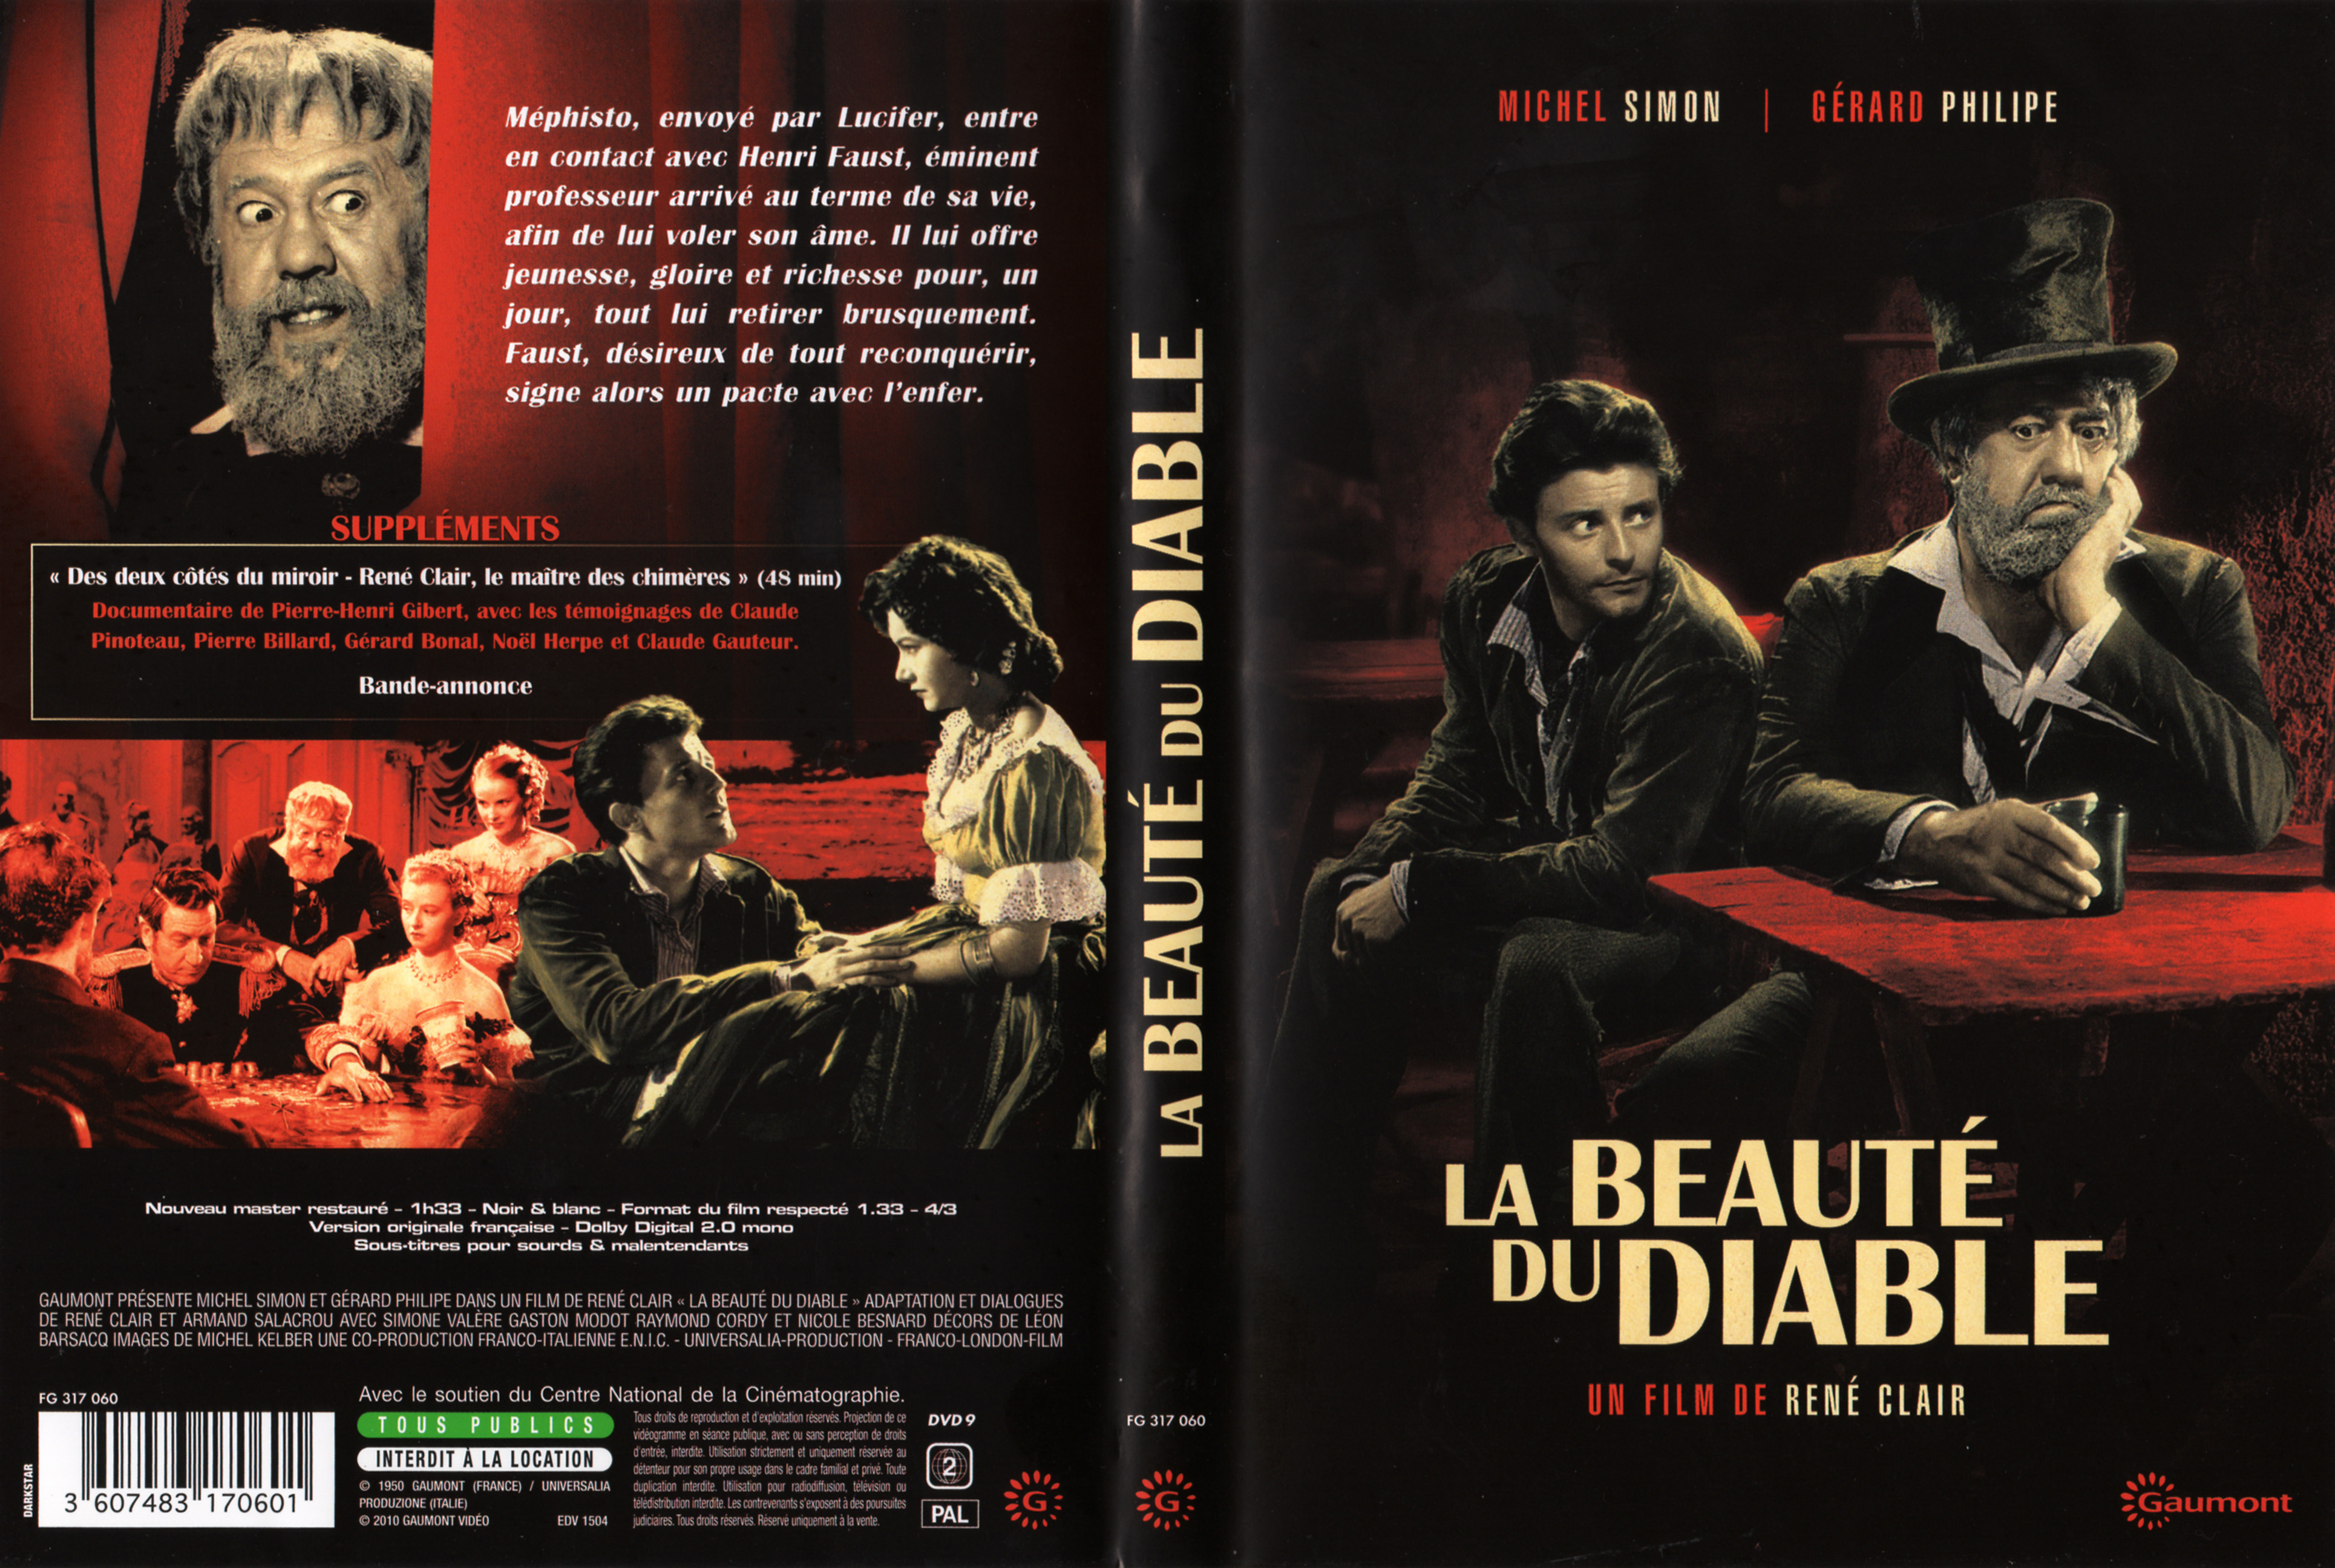 Jaquette DVD La beaut du diable v2